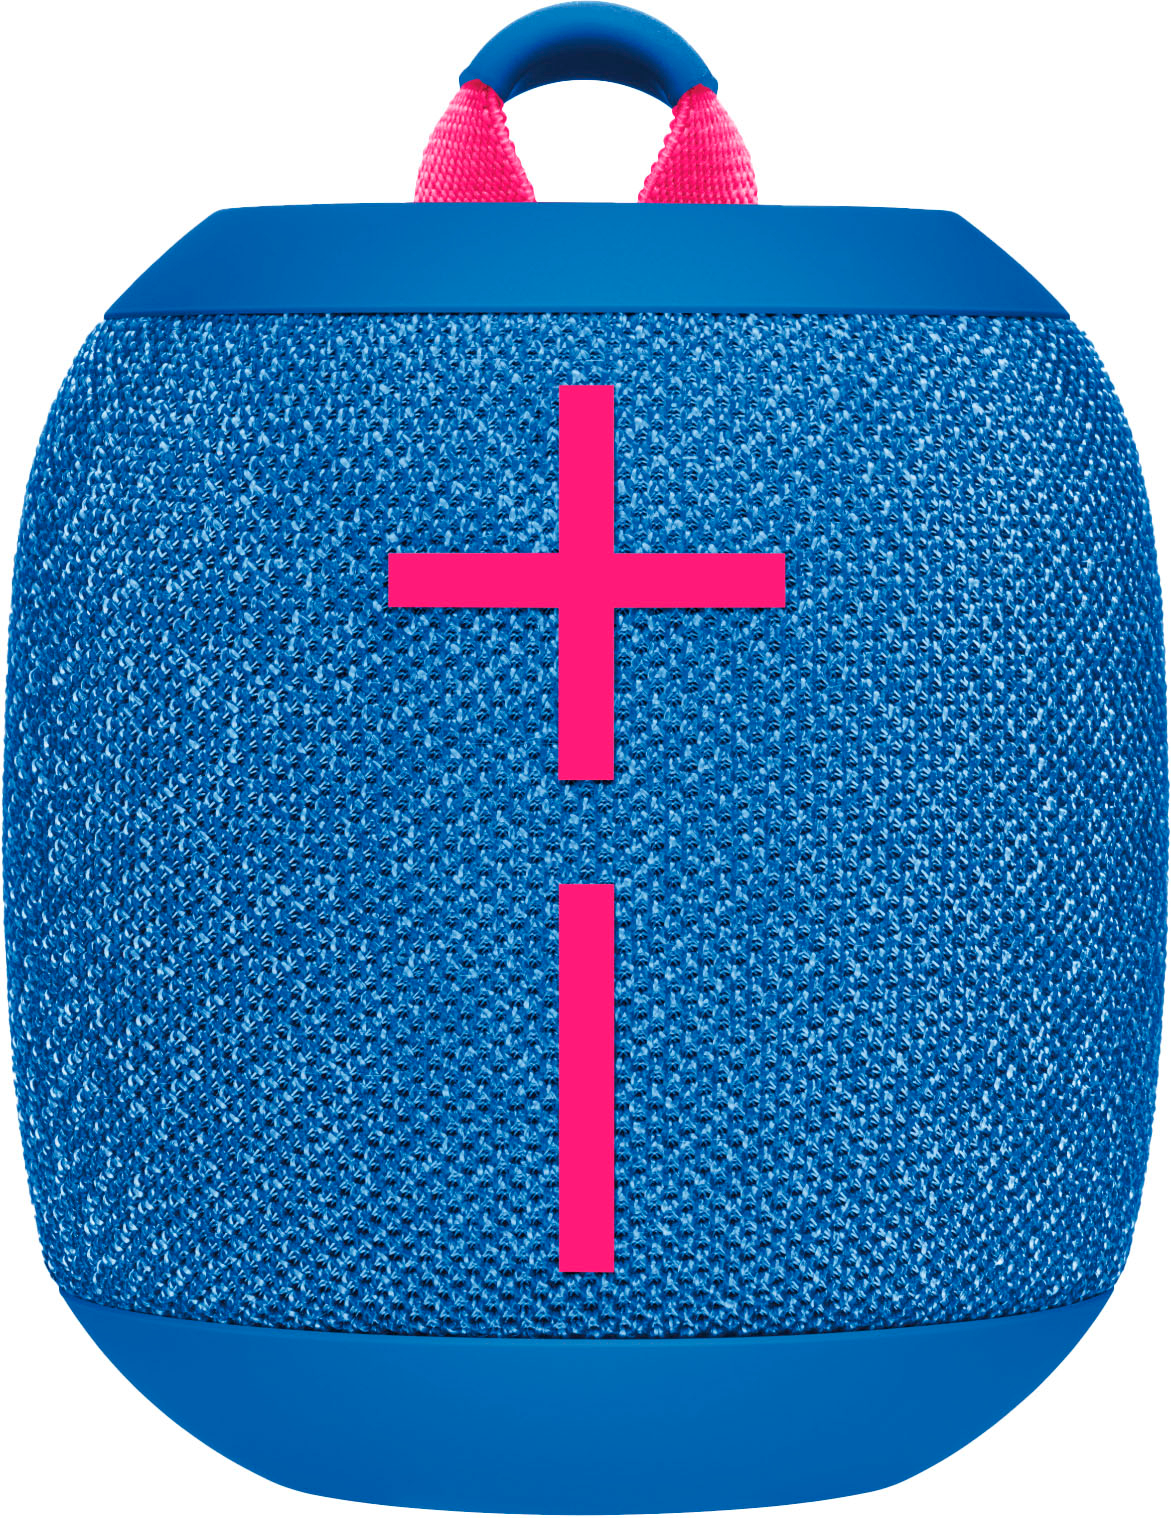 Ultimate Ears WONDERBOOM 3 Bluetooth Waterproof Portable Speaker